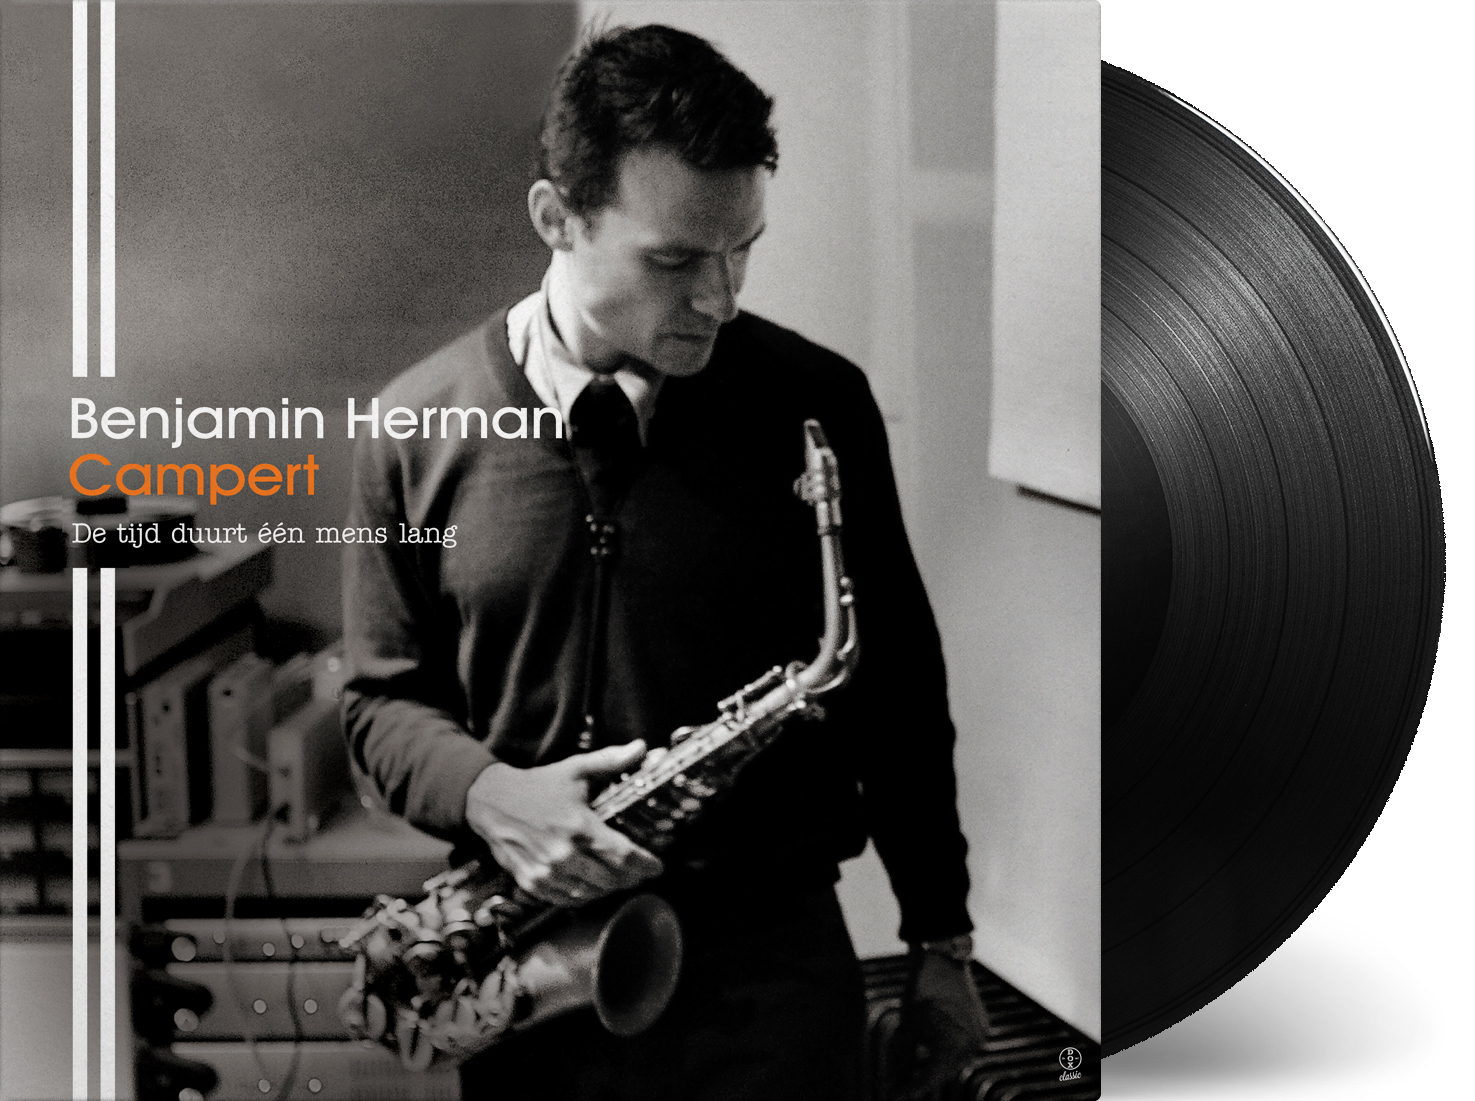  Album cover 'Campert' for Benjamin Herman. 